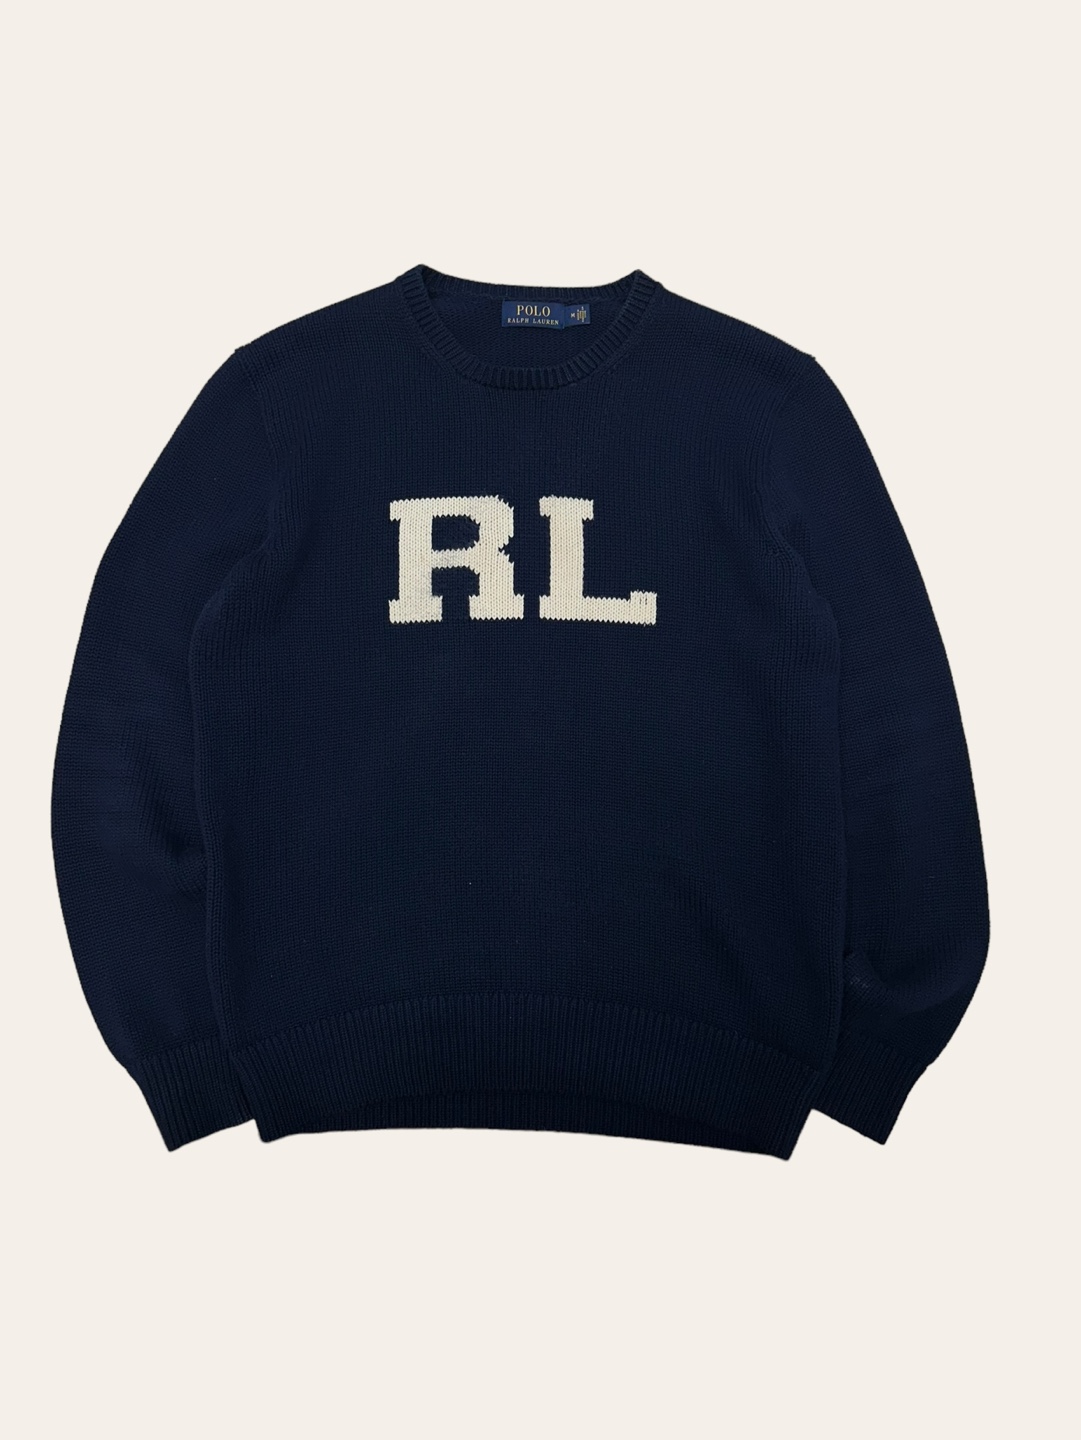 Polo ralph lauren navy RL logo sweater M